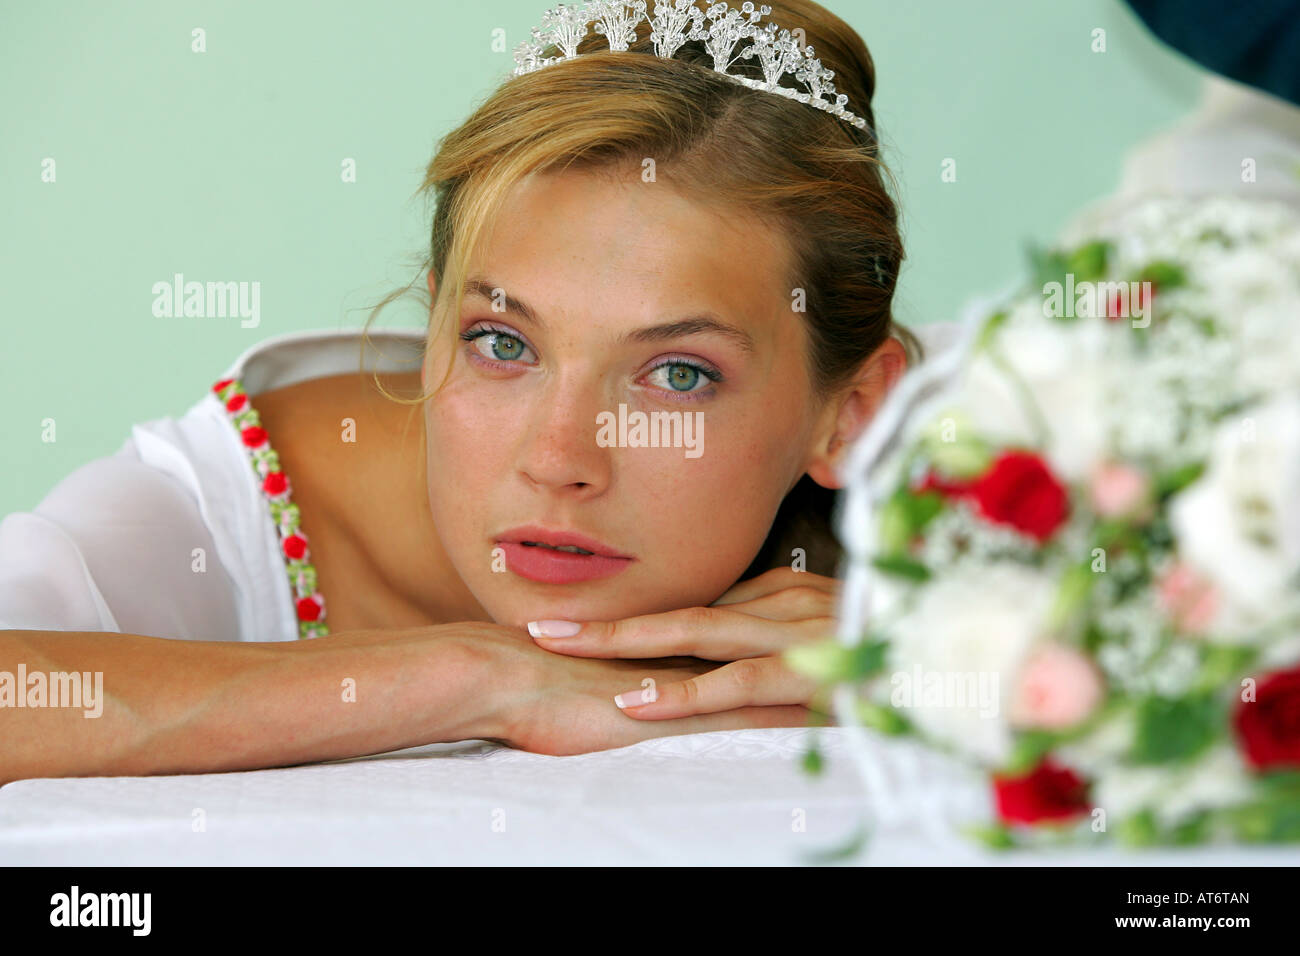 Schöne junge lächelnde Braut am Tag der Hochzeit tragen traditionelle weiße Kleidung. Stockfoto